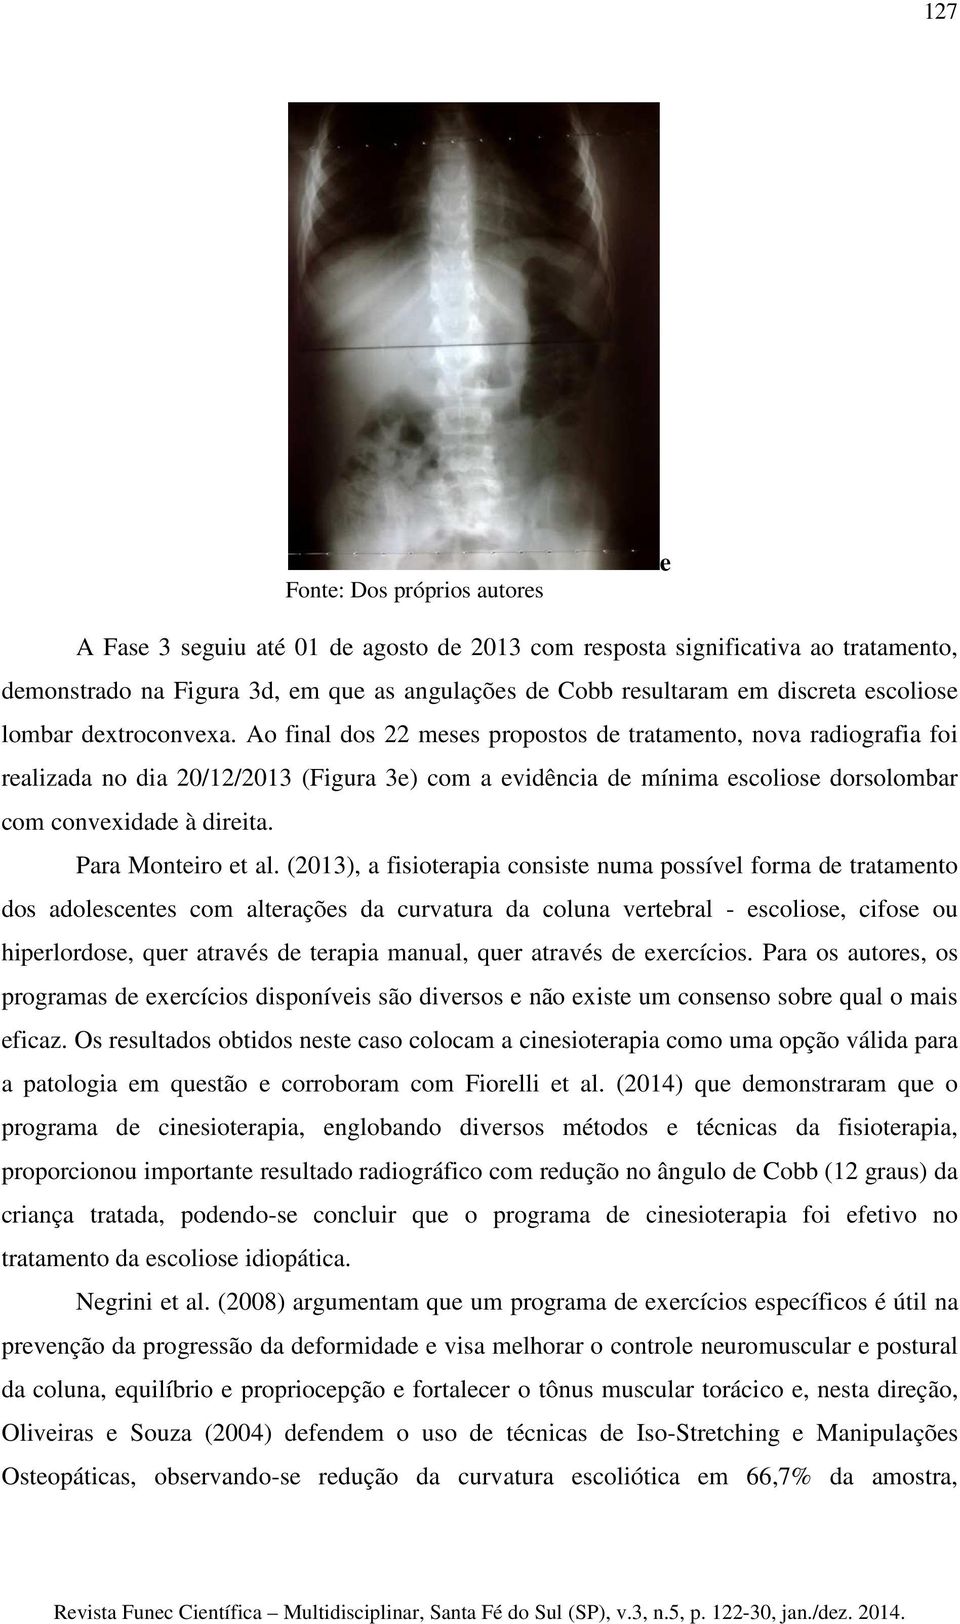 Ao final dos 22 meses propostos de tratamento, nova radiografia foi realizada no dia 20/12/2013 (Figura 3e) com a evidência de mínima escoliose dorsolombar com convexidade à direita.